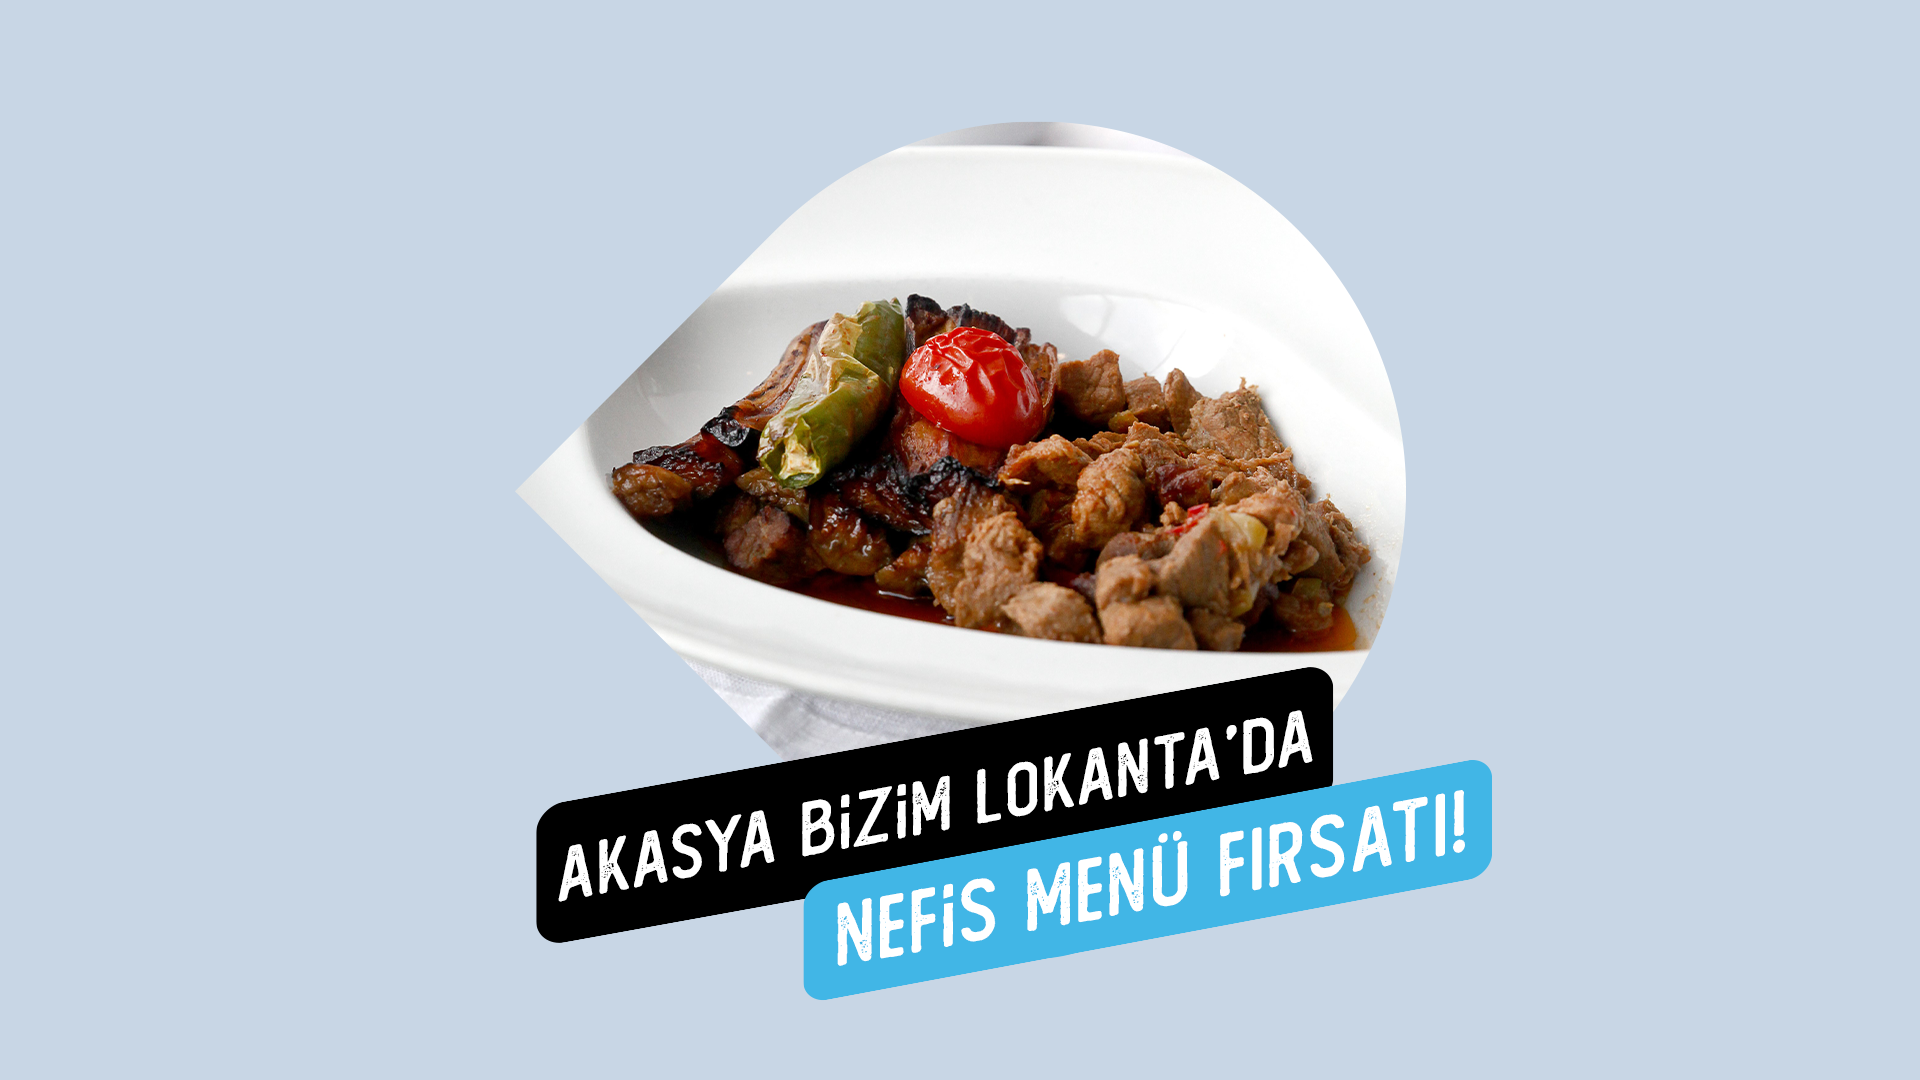 AKSY Token sahiplerine Bizim Lokanta'da nefis yemek fırsatı!